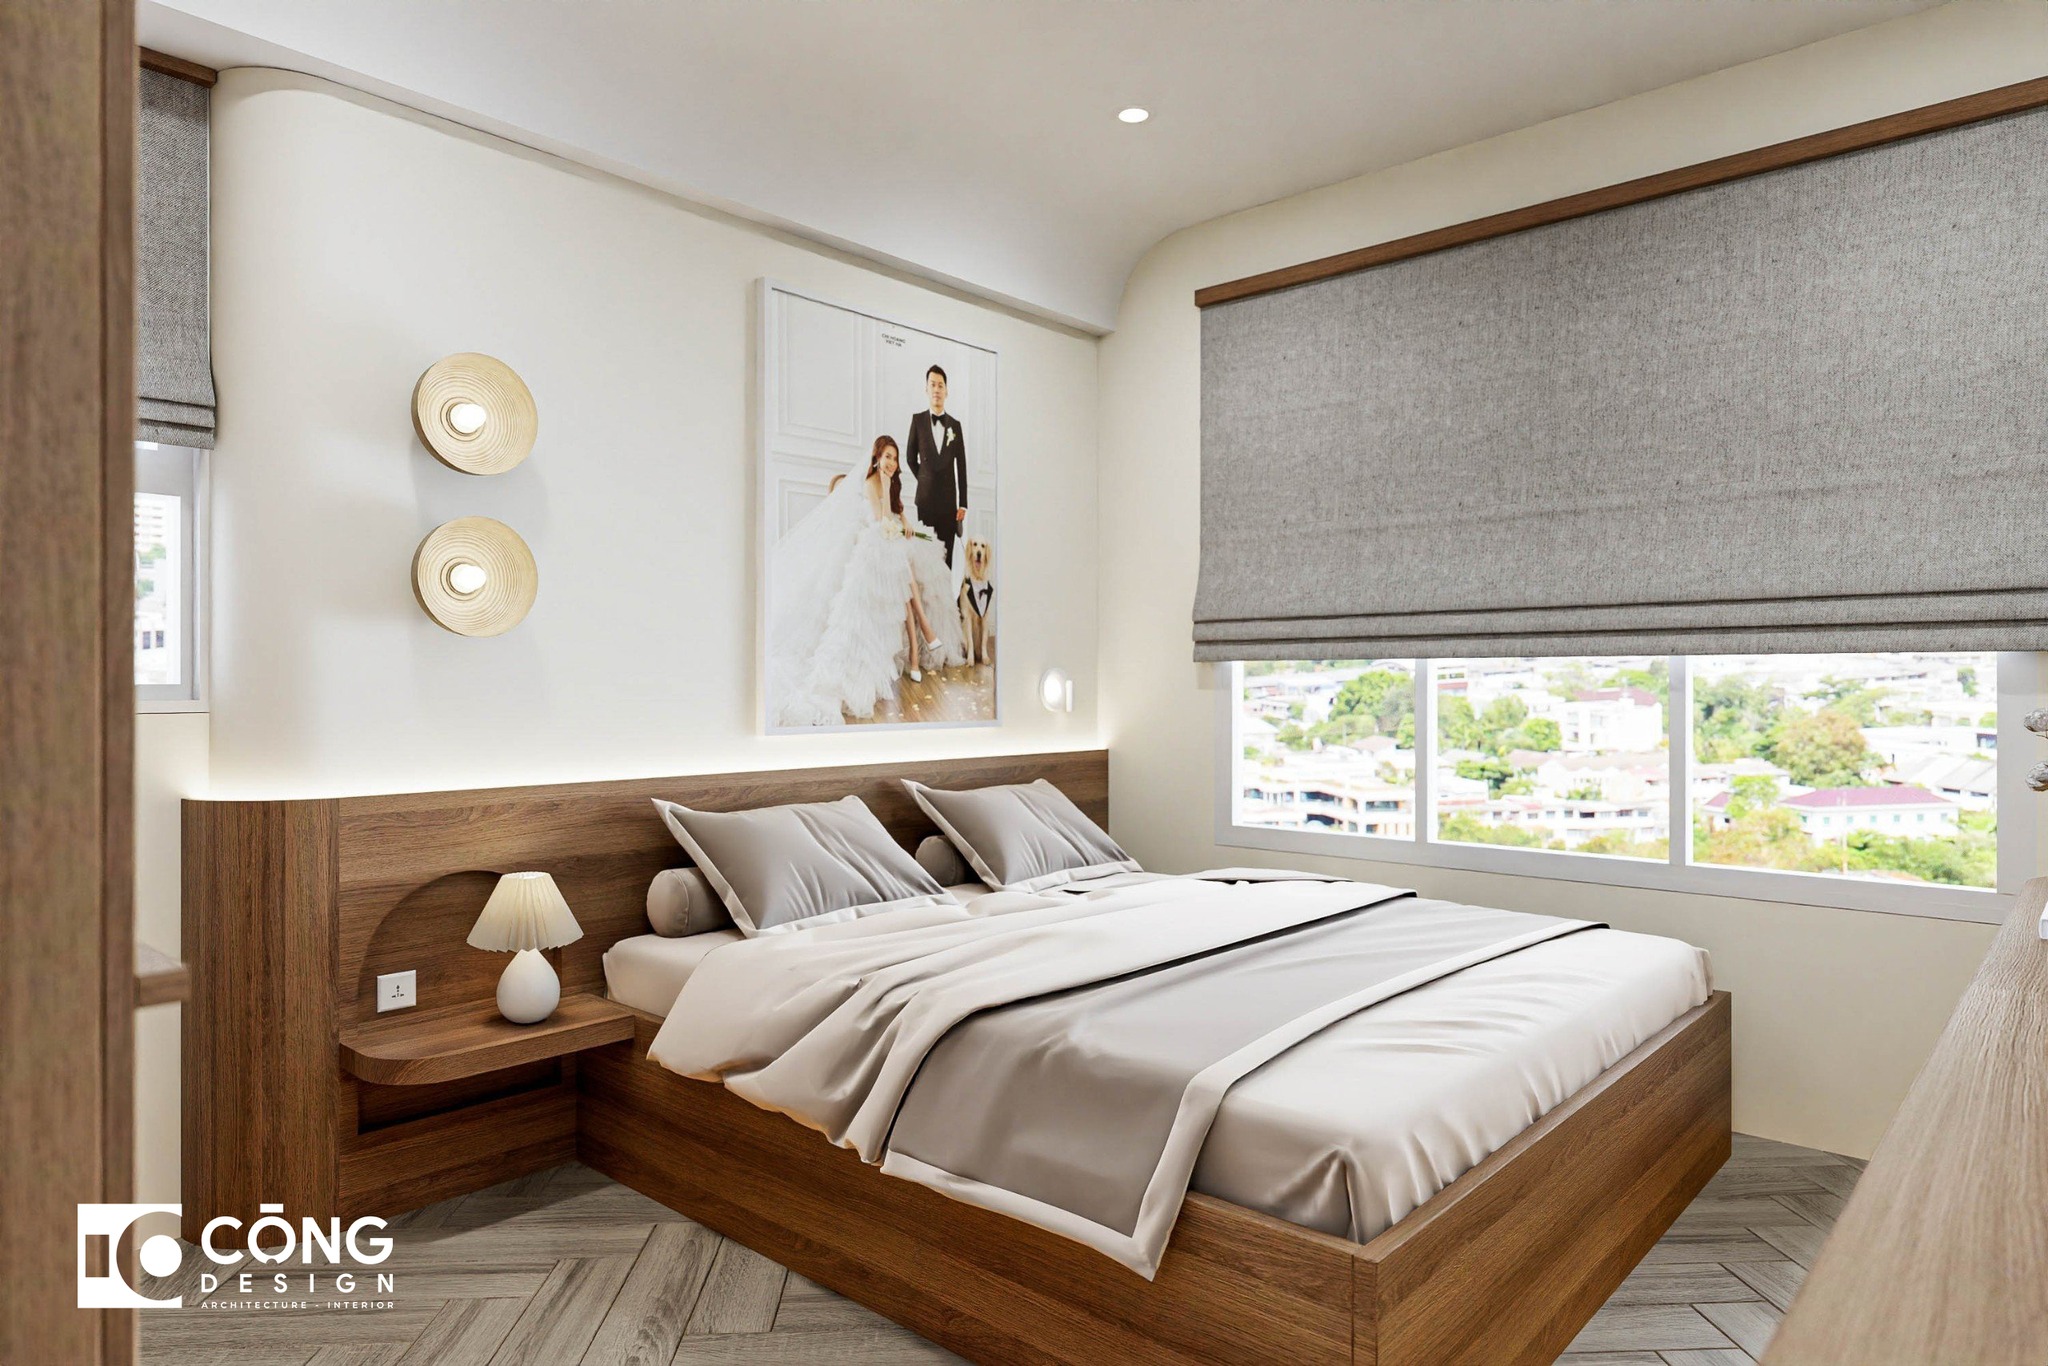 Thiết kế giường gỗ mang lại cảm giác sang trọng cho phòng ngủ thơ mộng hơn